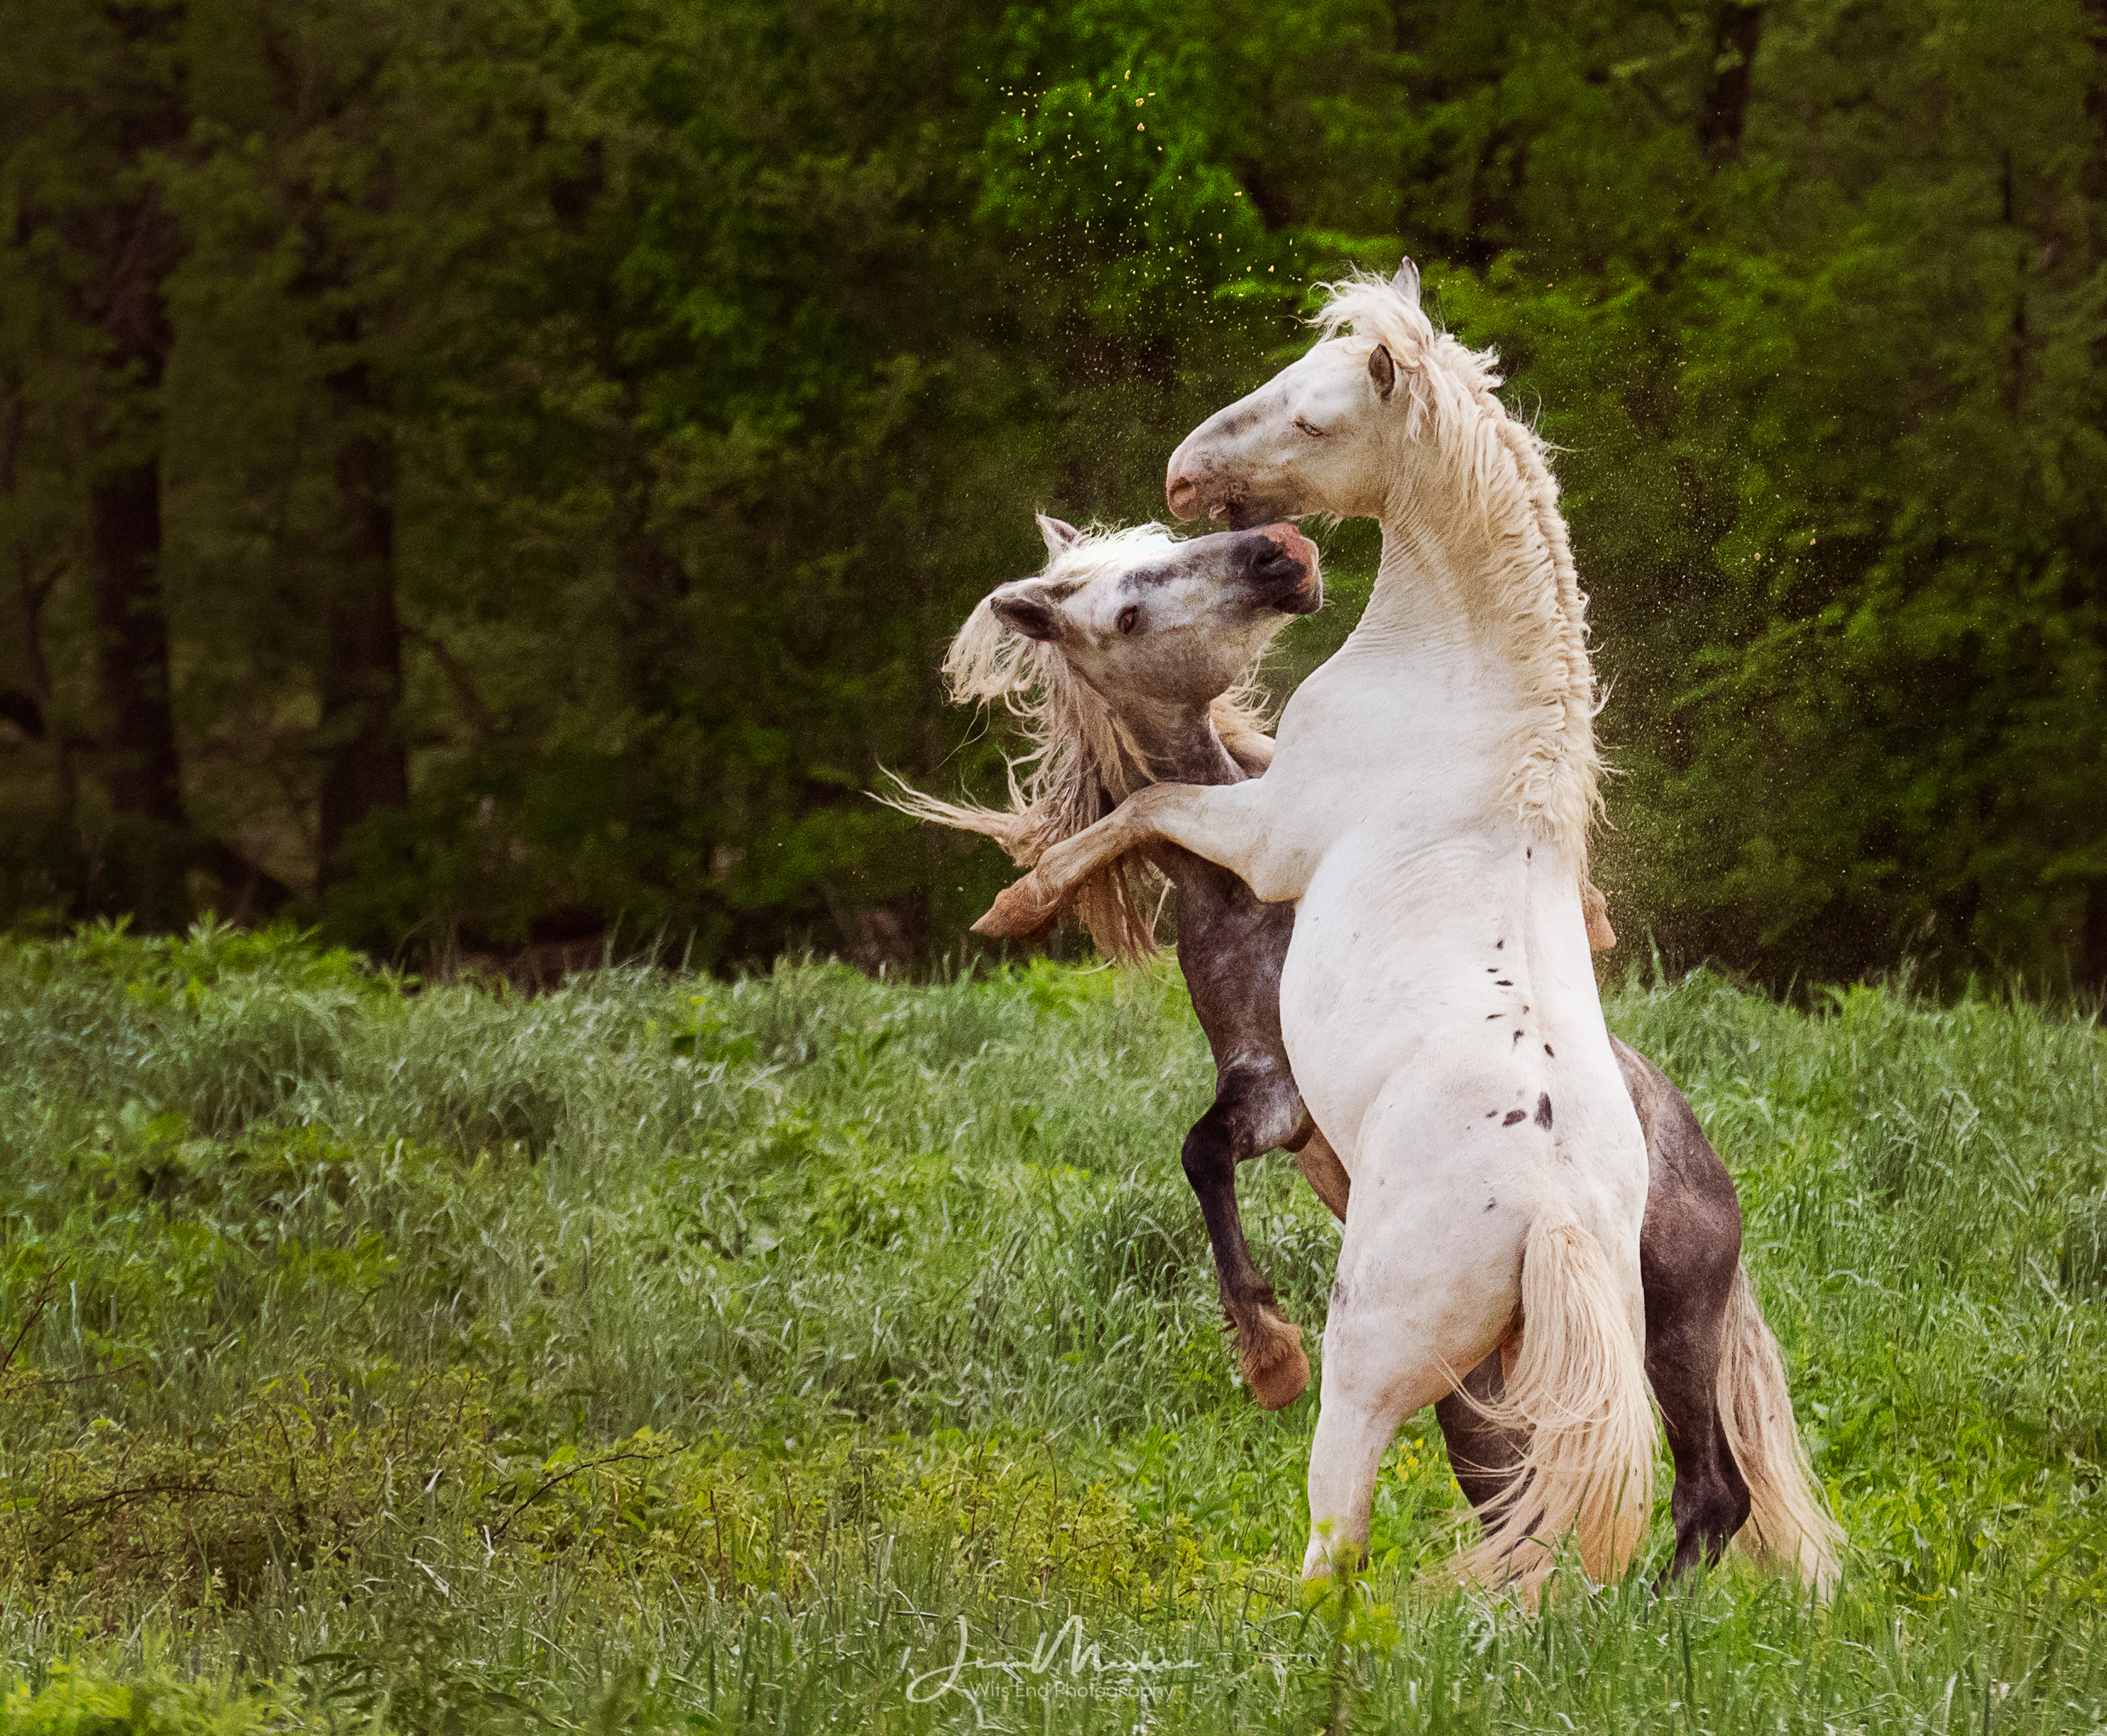 Wild horses fighting